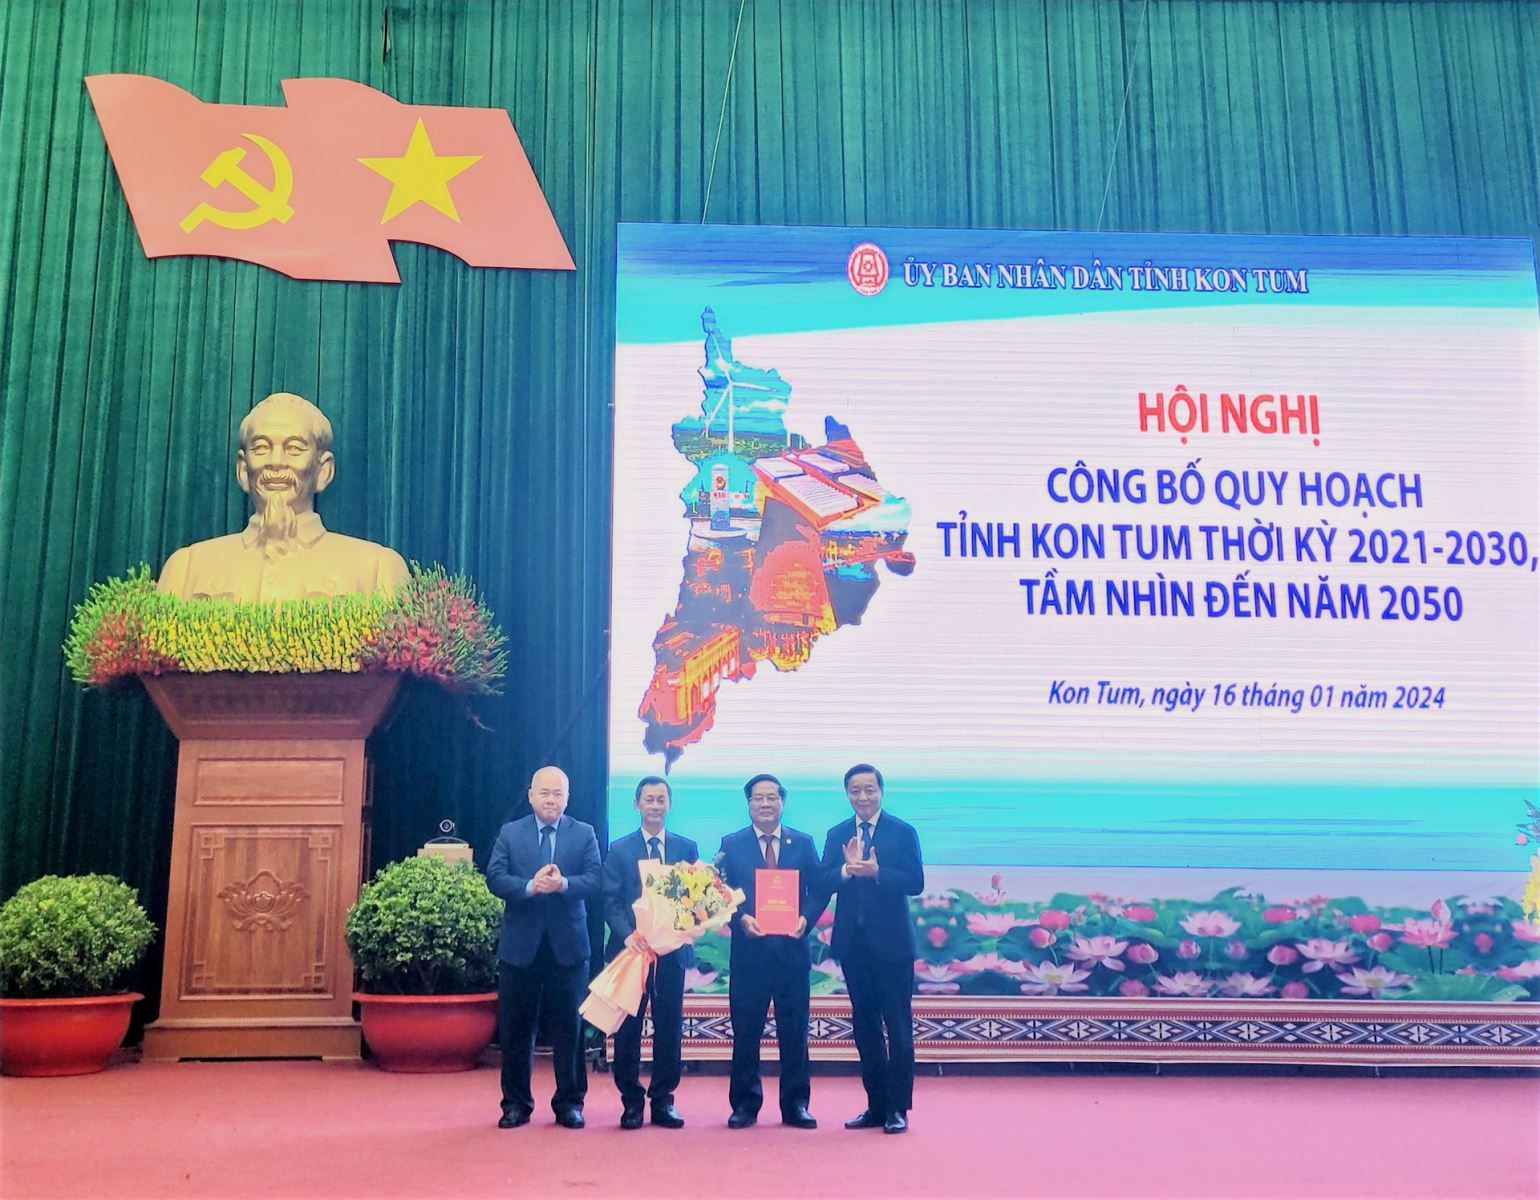 Công bố Quy hoạch tỉnh Kon Tum thời kỳ 2021-2030, tầm nhìn đến năm 2050